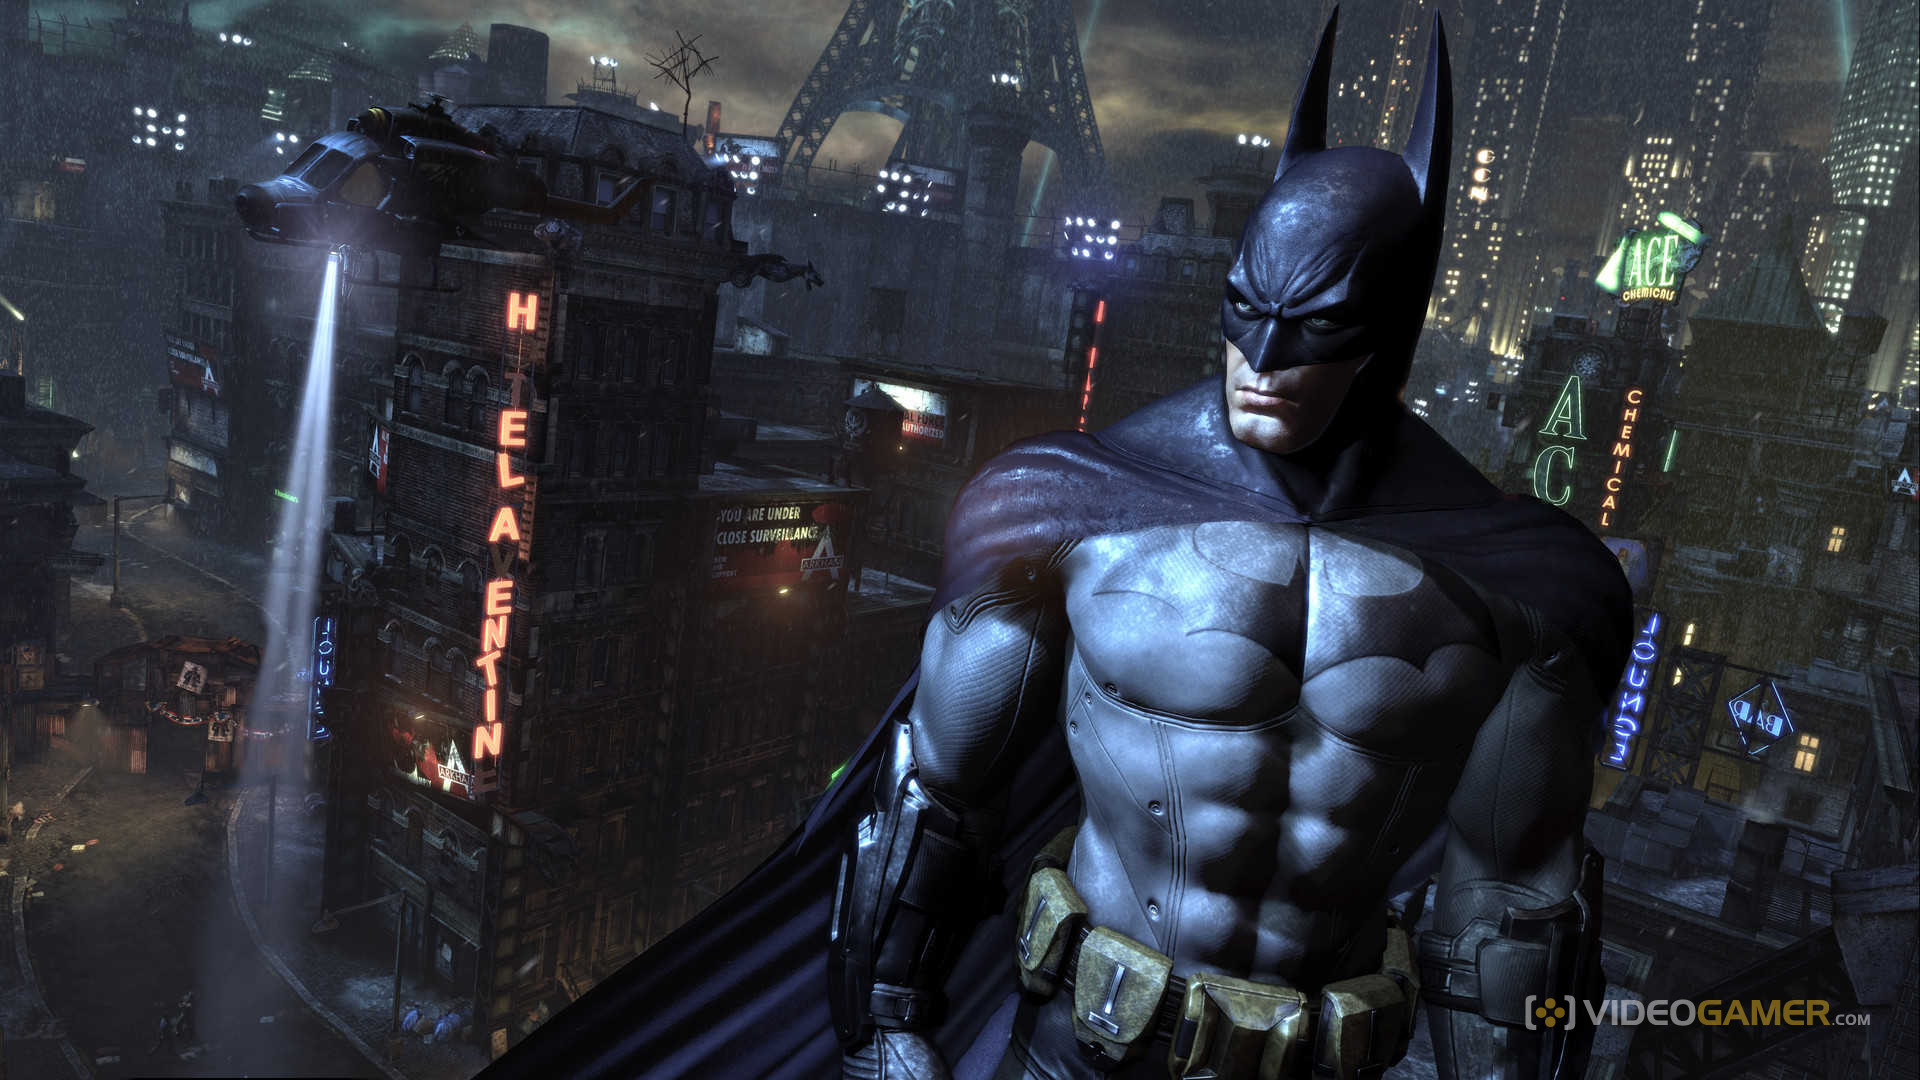 Batman: Arkham City #1